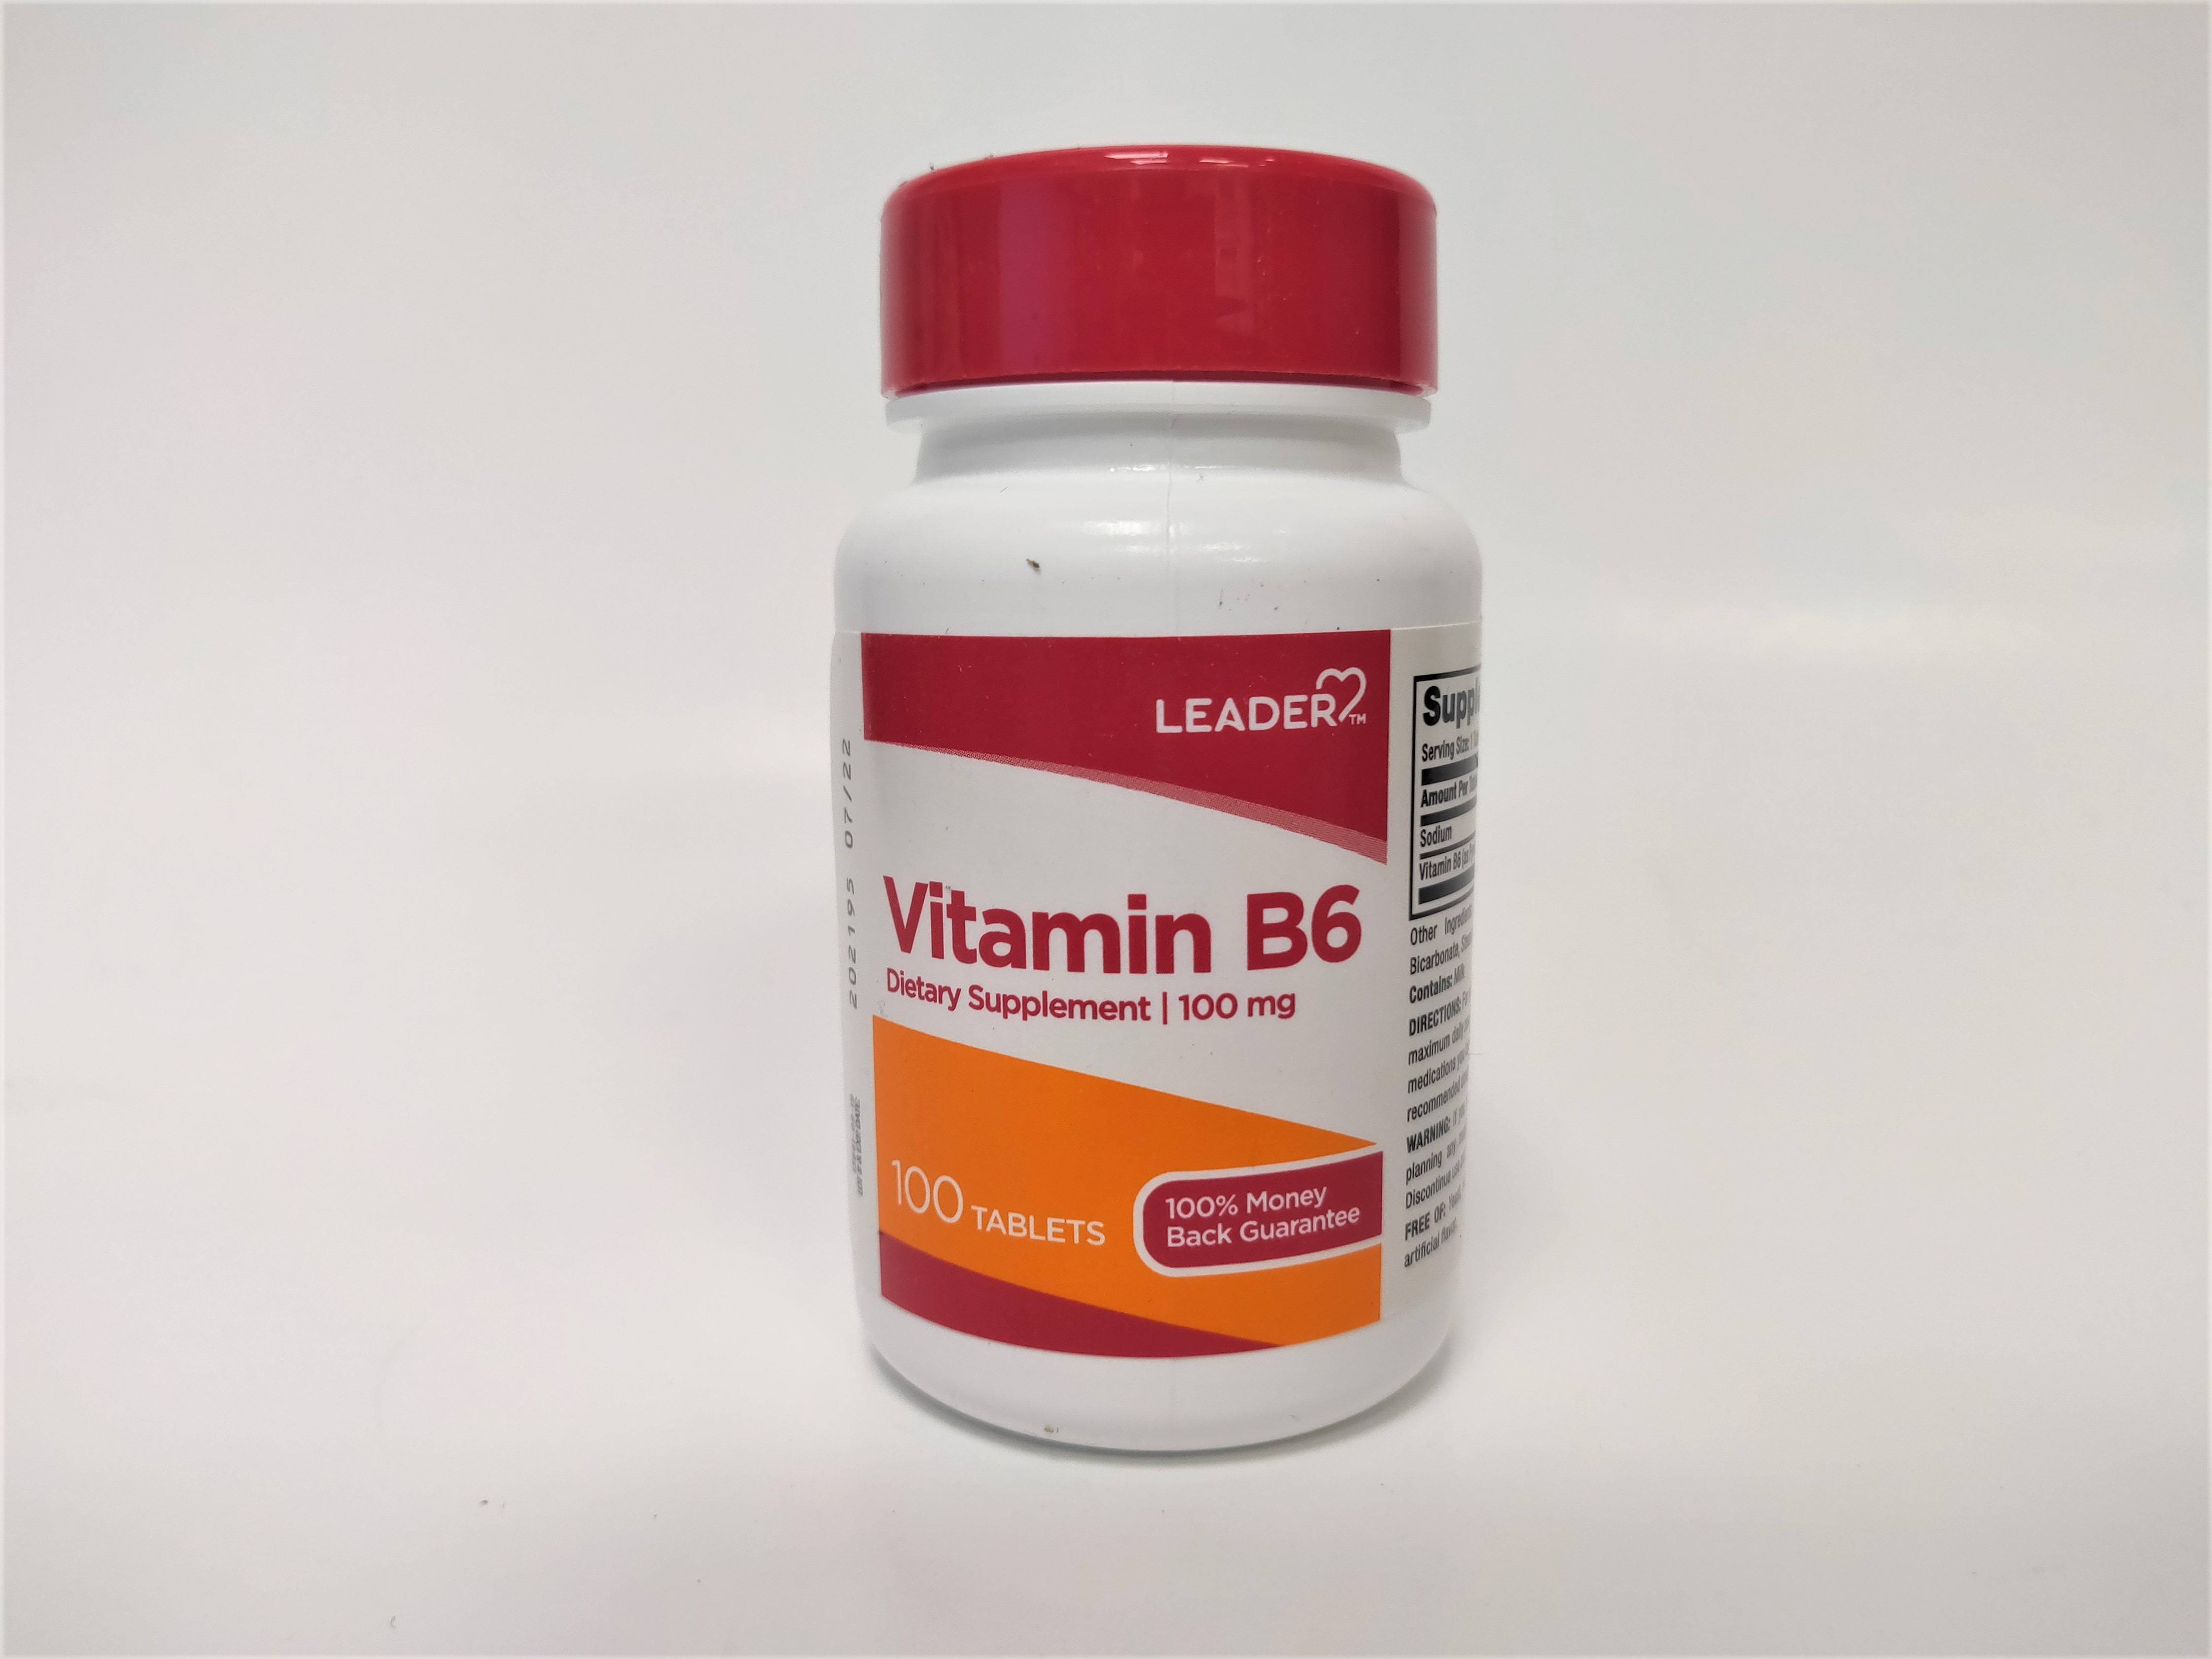 Leader Vitamin B6 100mg 100 Tablets